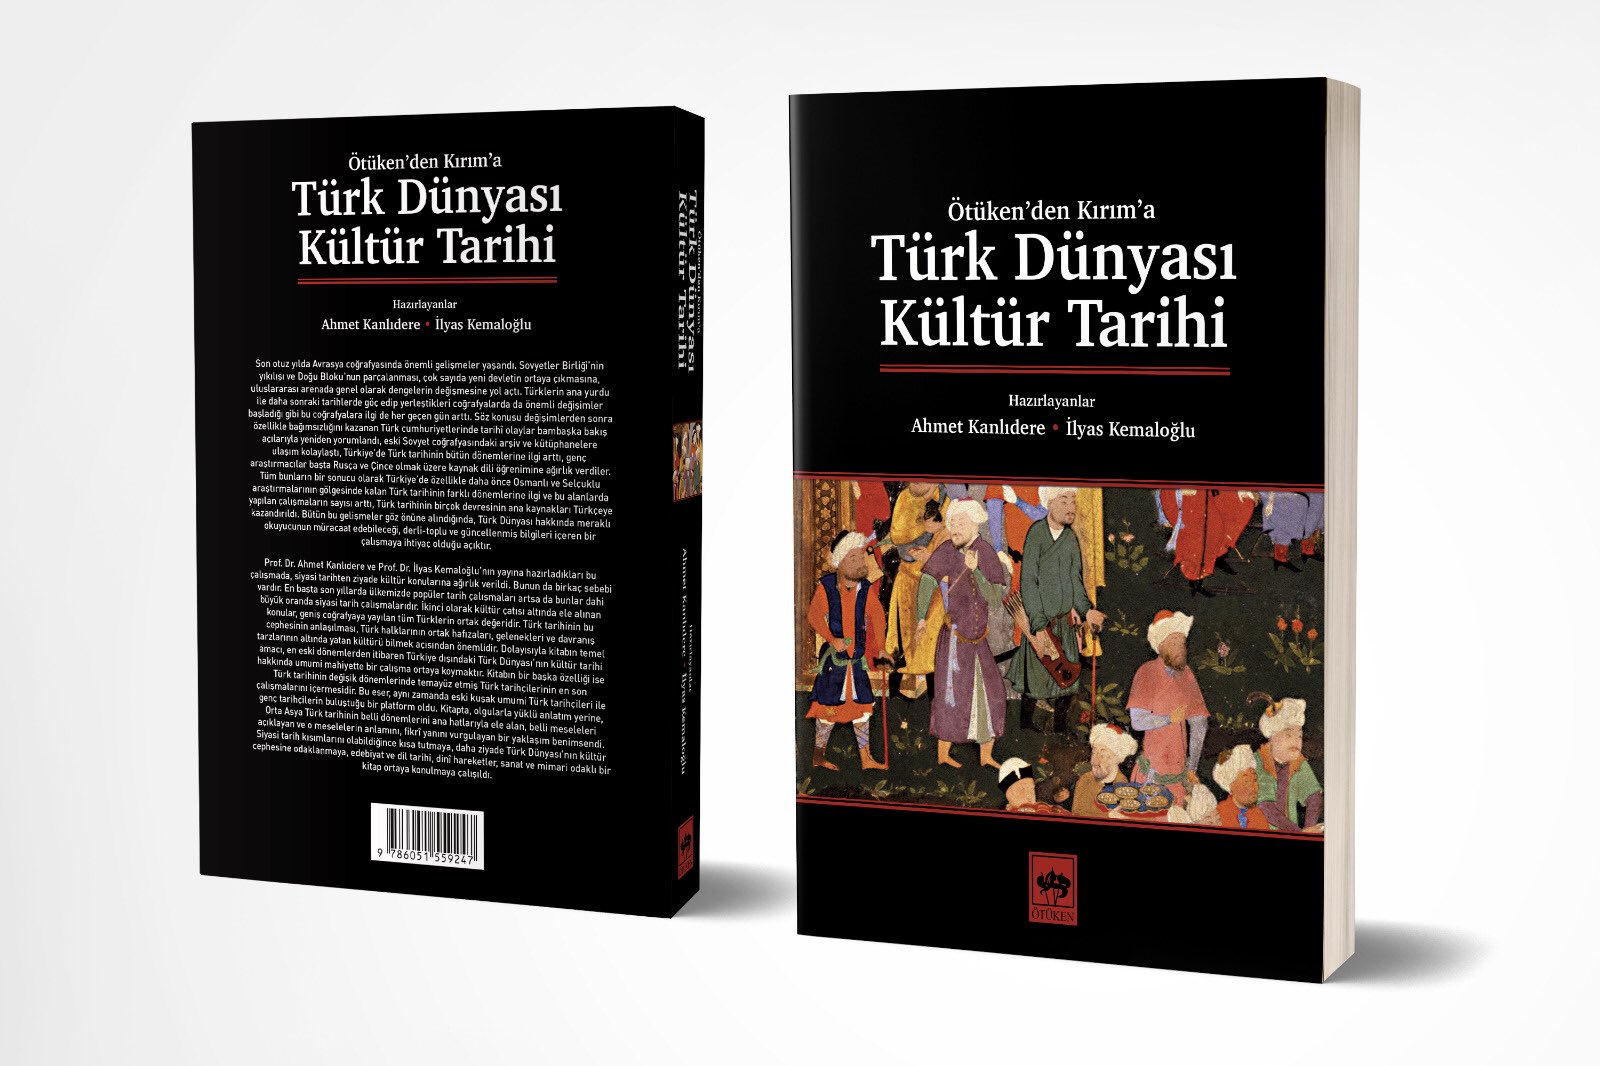 TurkDunyasiKulturTarihi.jpeg (212 KB)